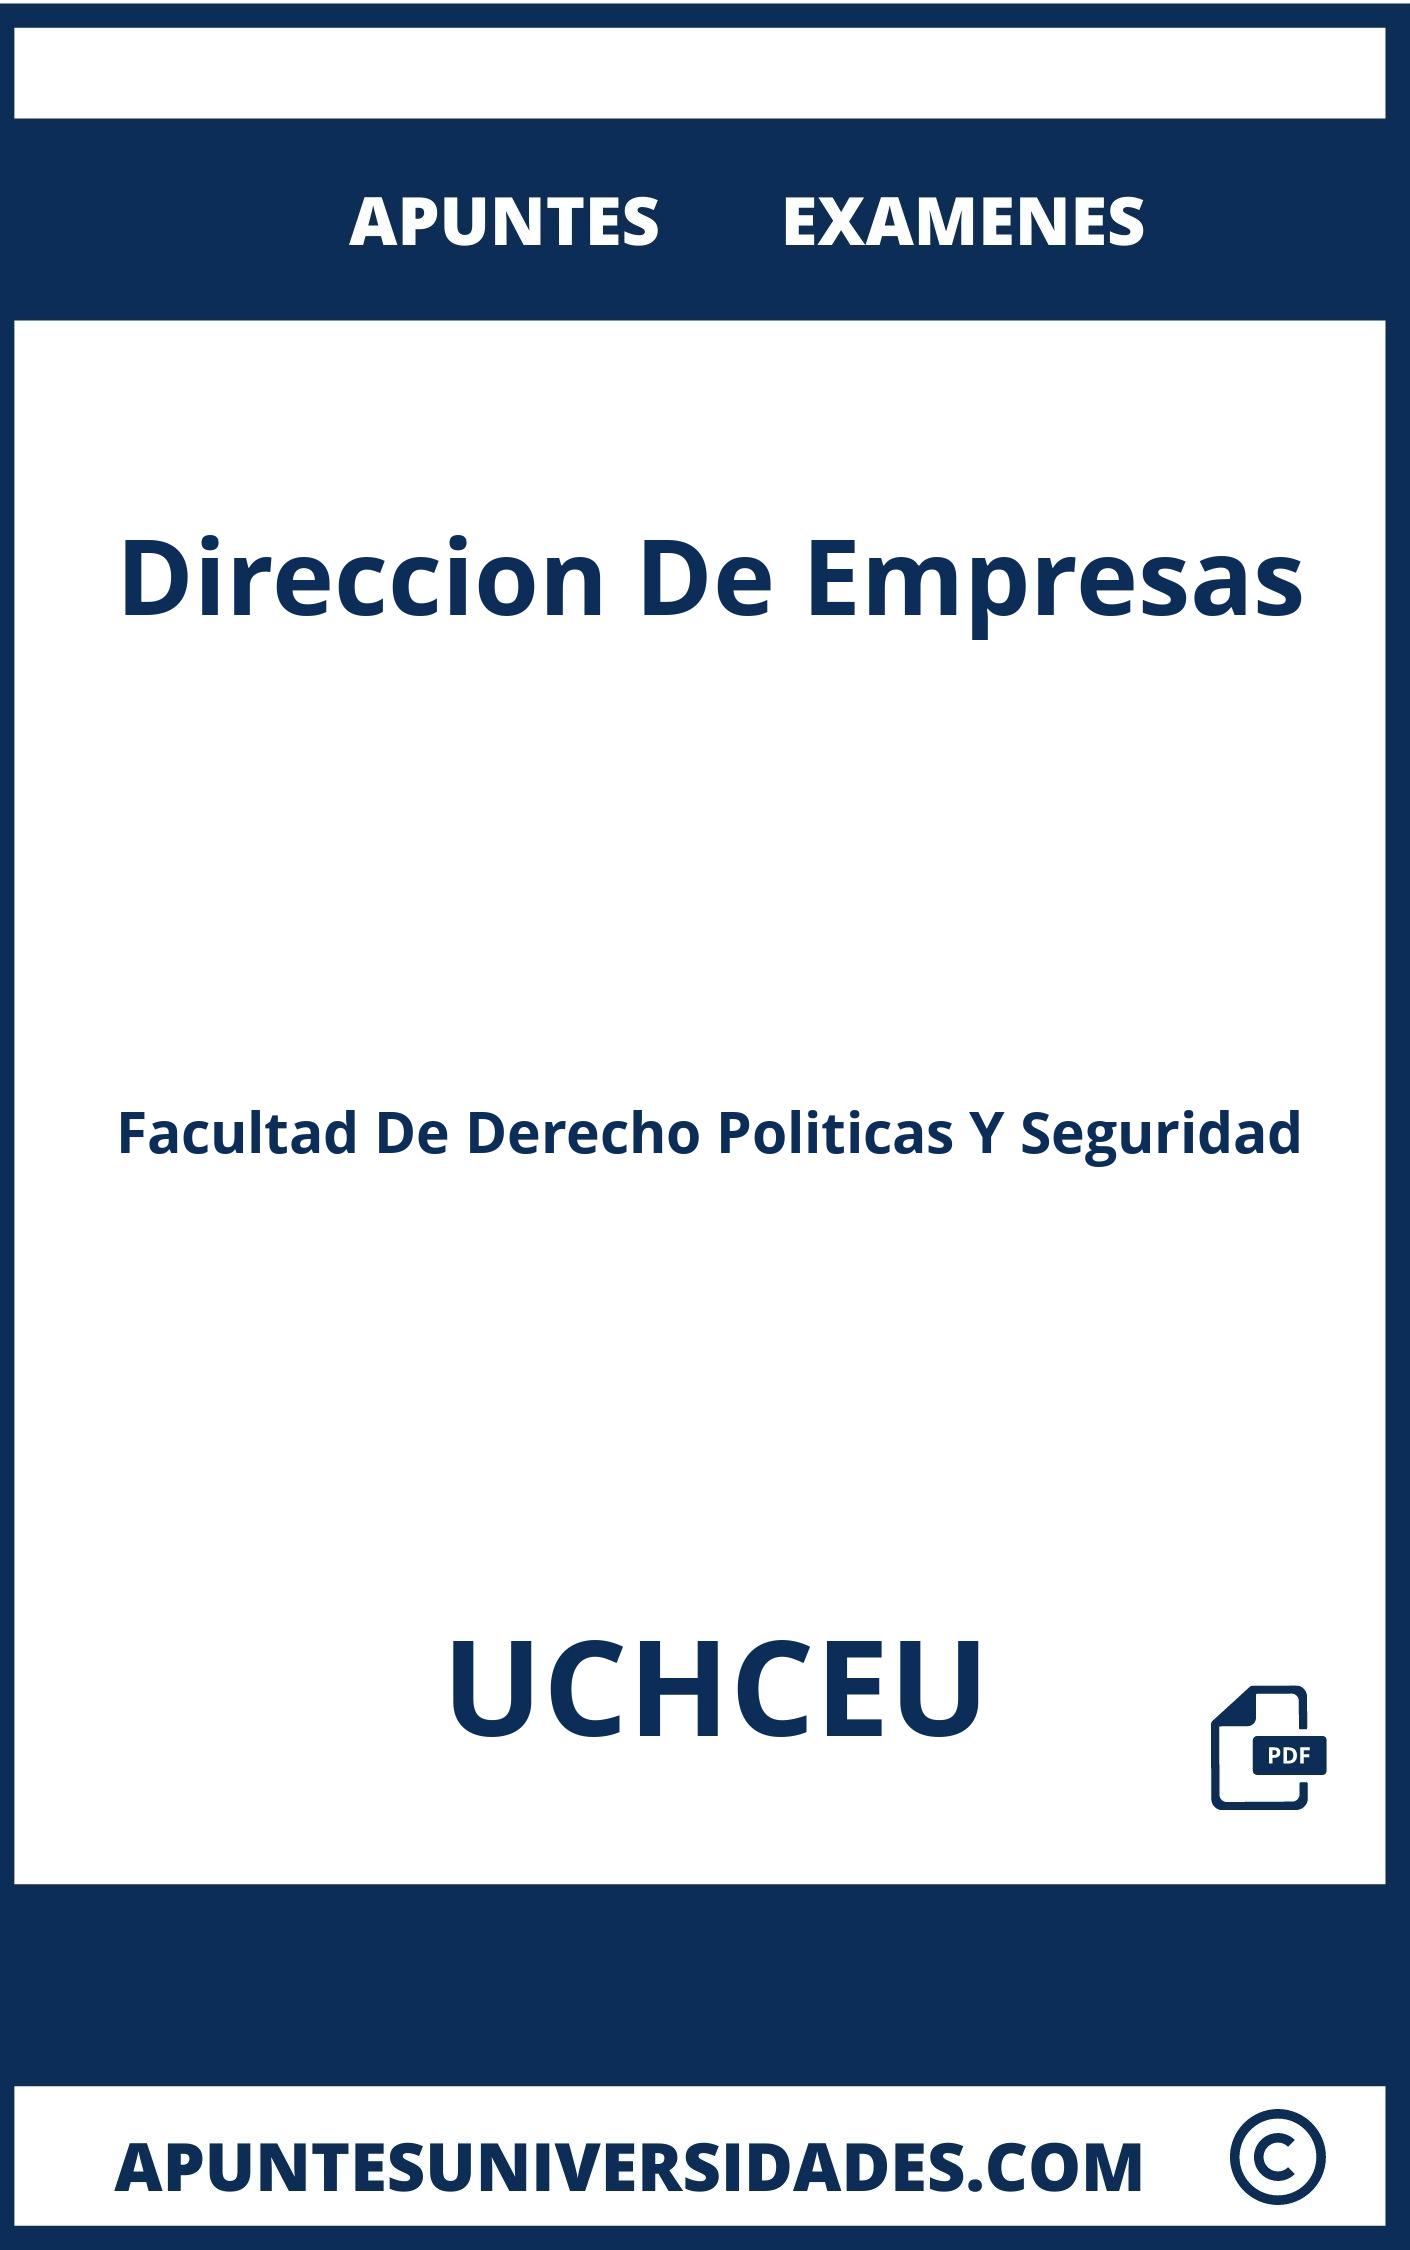 Apuntes Examenes Direccion De Empresas UCHCEU